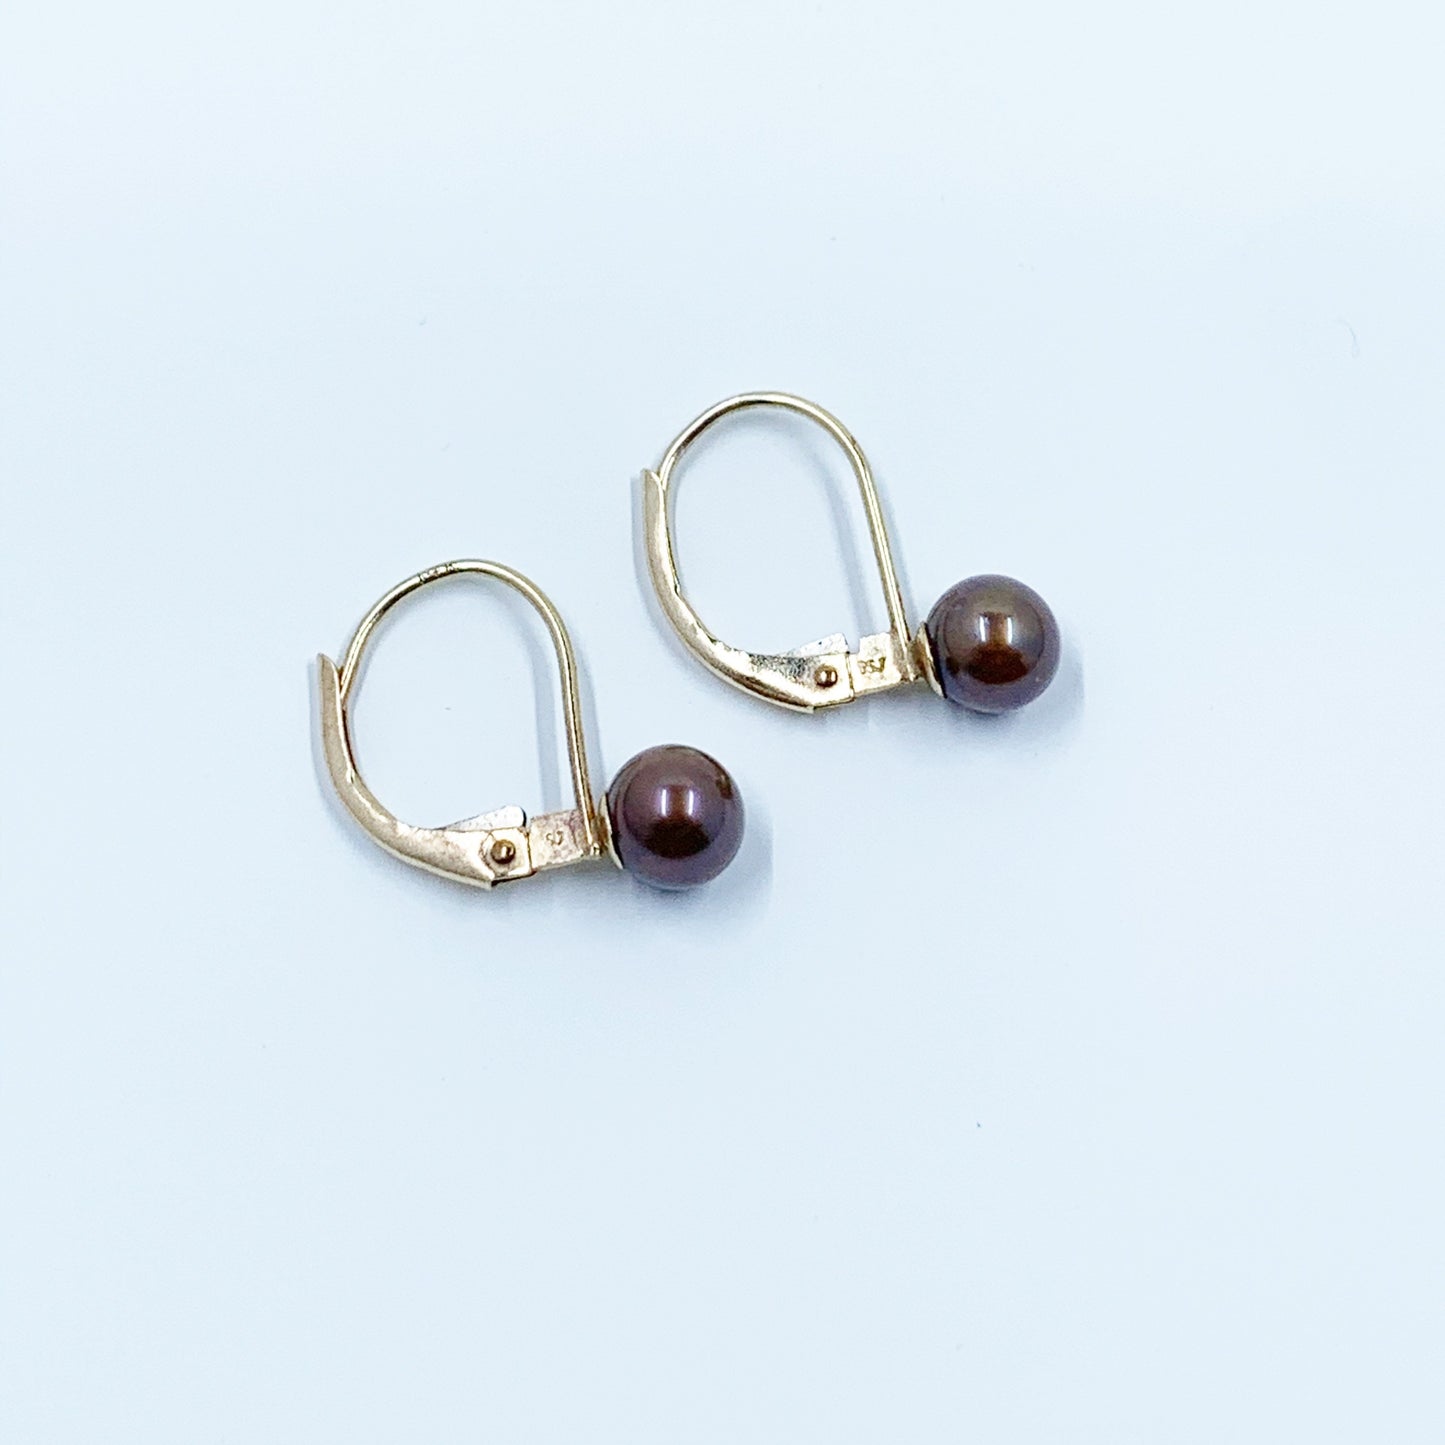 Vintage Gold Pearl Earrings | Chocolate Grey Pearl Earrings | Lever Back